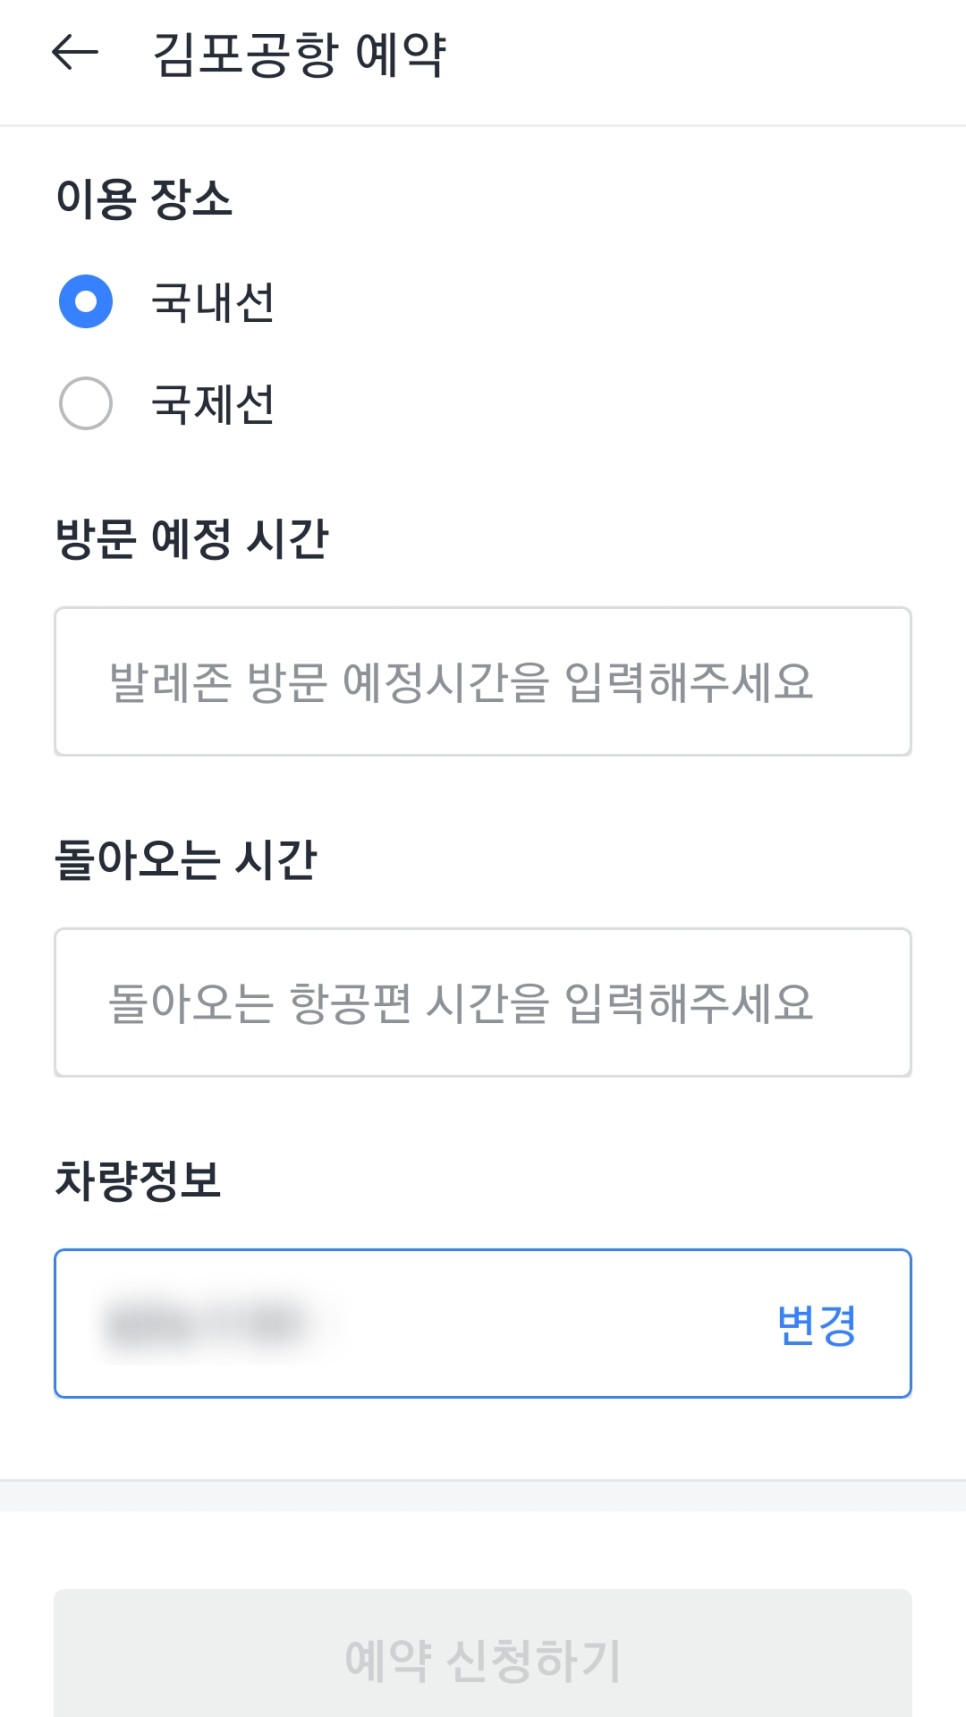 김포공항 주차장 발렛파킹 이용방법 카카오T 예약 꿀팁까지 정리!